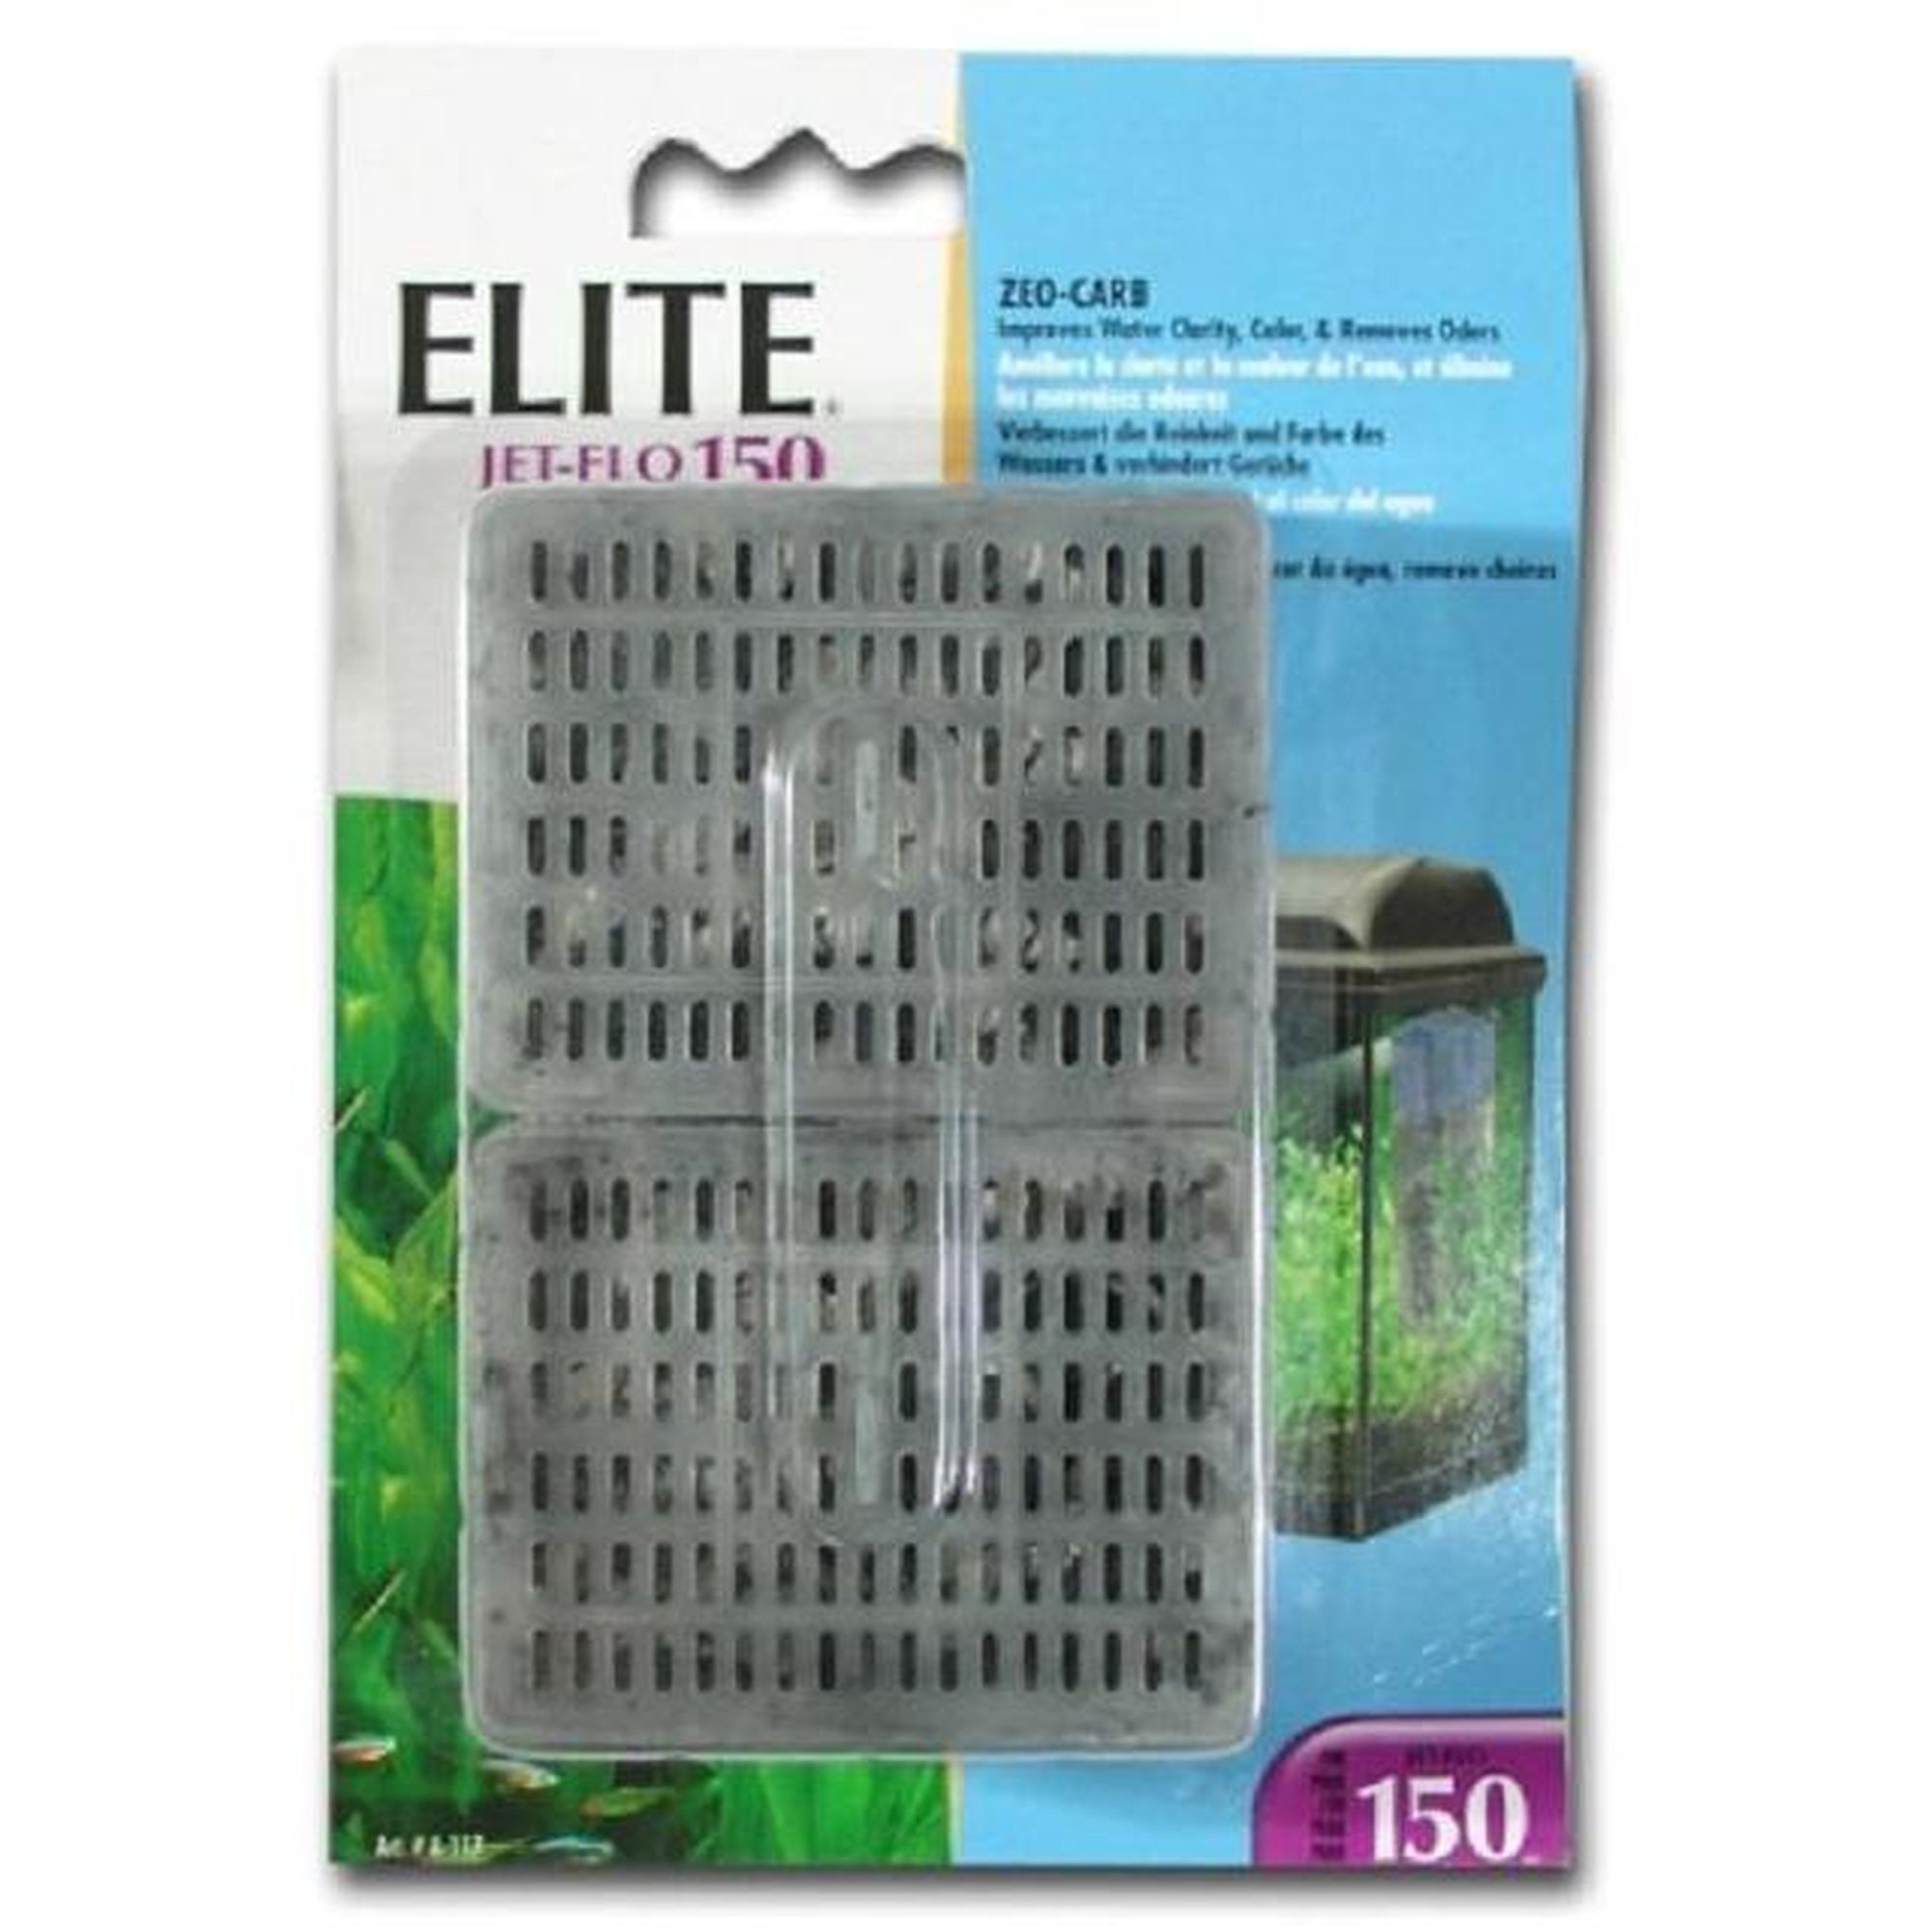 Elite Zeo Carb Cartridge Filter For Jet Flo 150